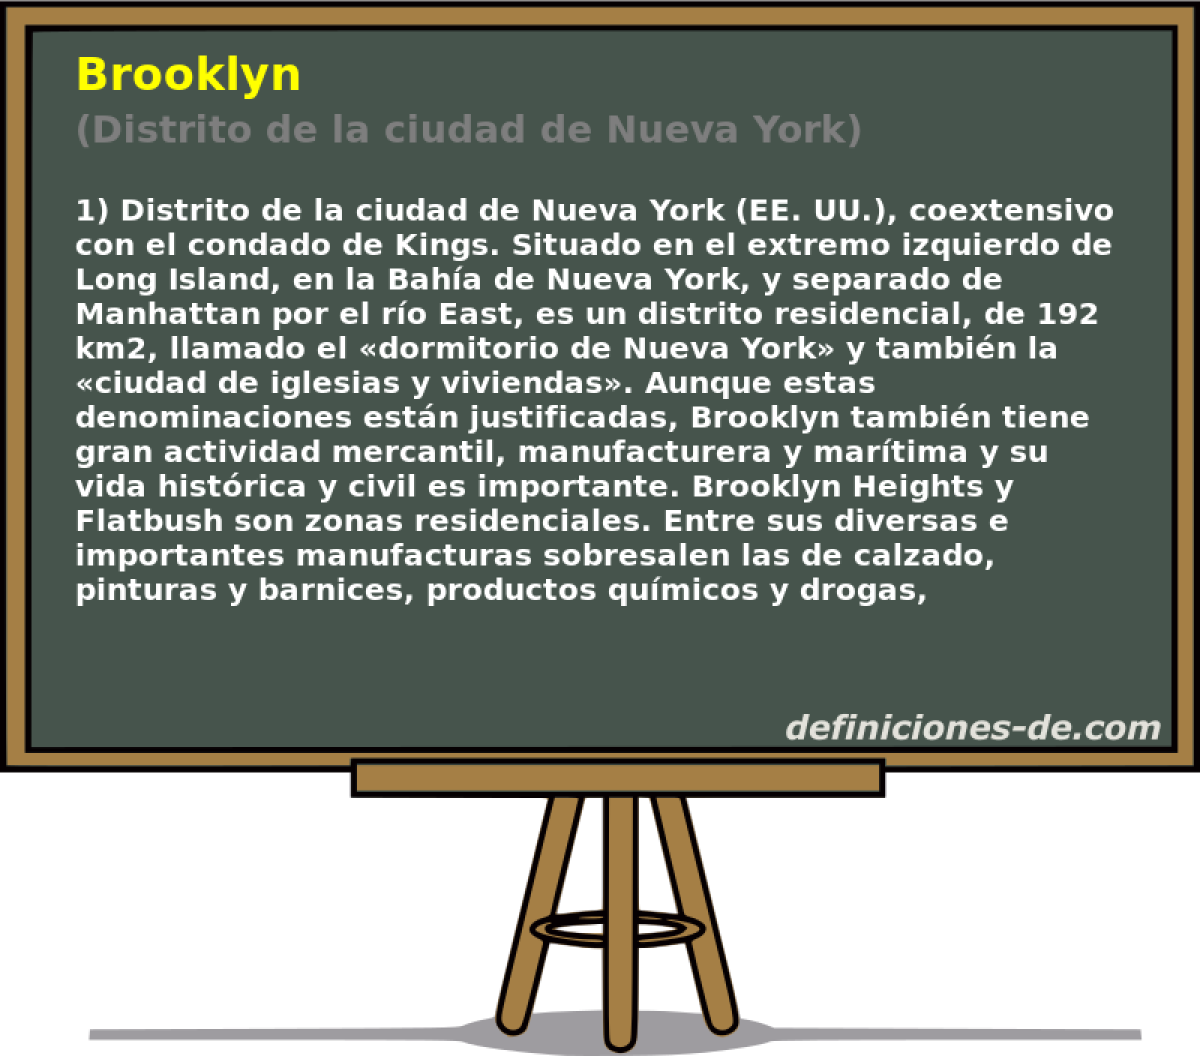 Brooklyn (Distrito de la ciudad de Nueva York)